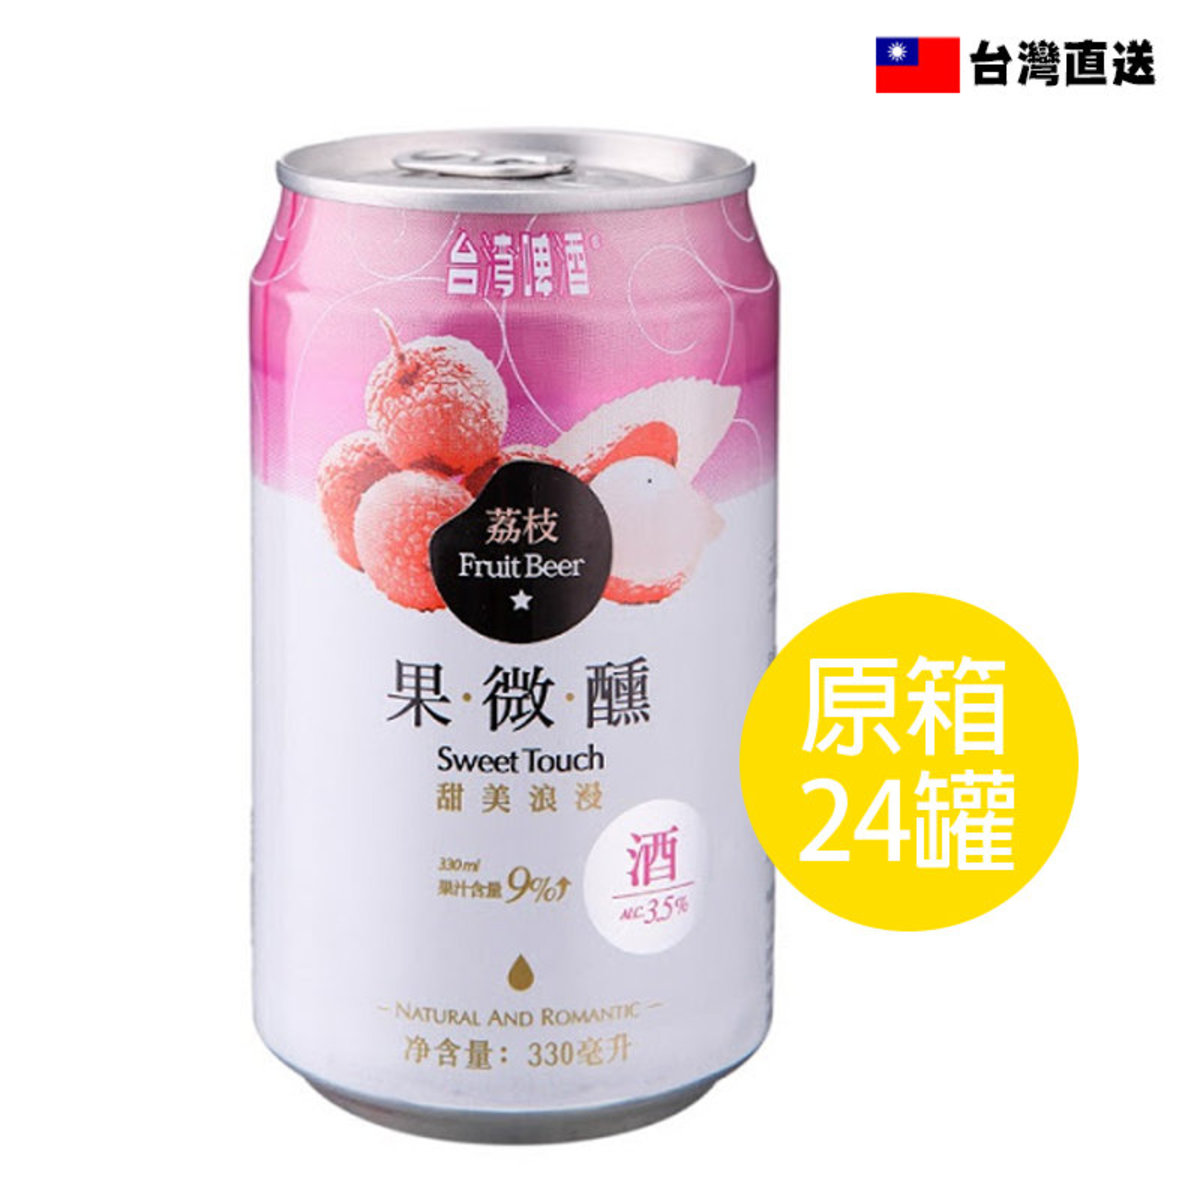 荔枝果微醺啤酒(罐裝) 330ml 原箱24罐(平行進口)